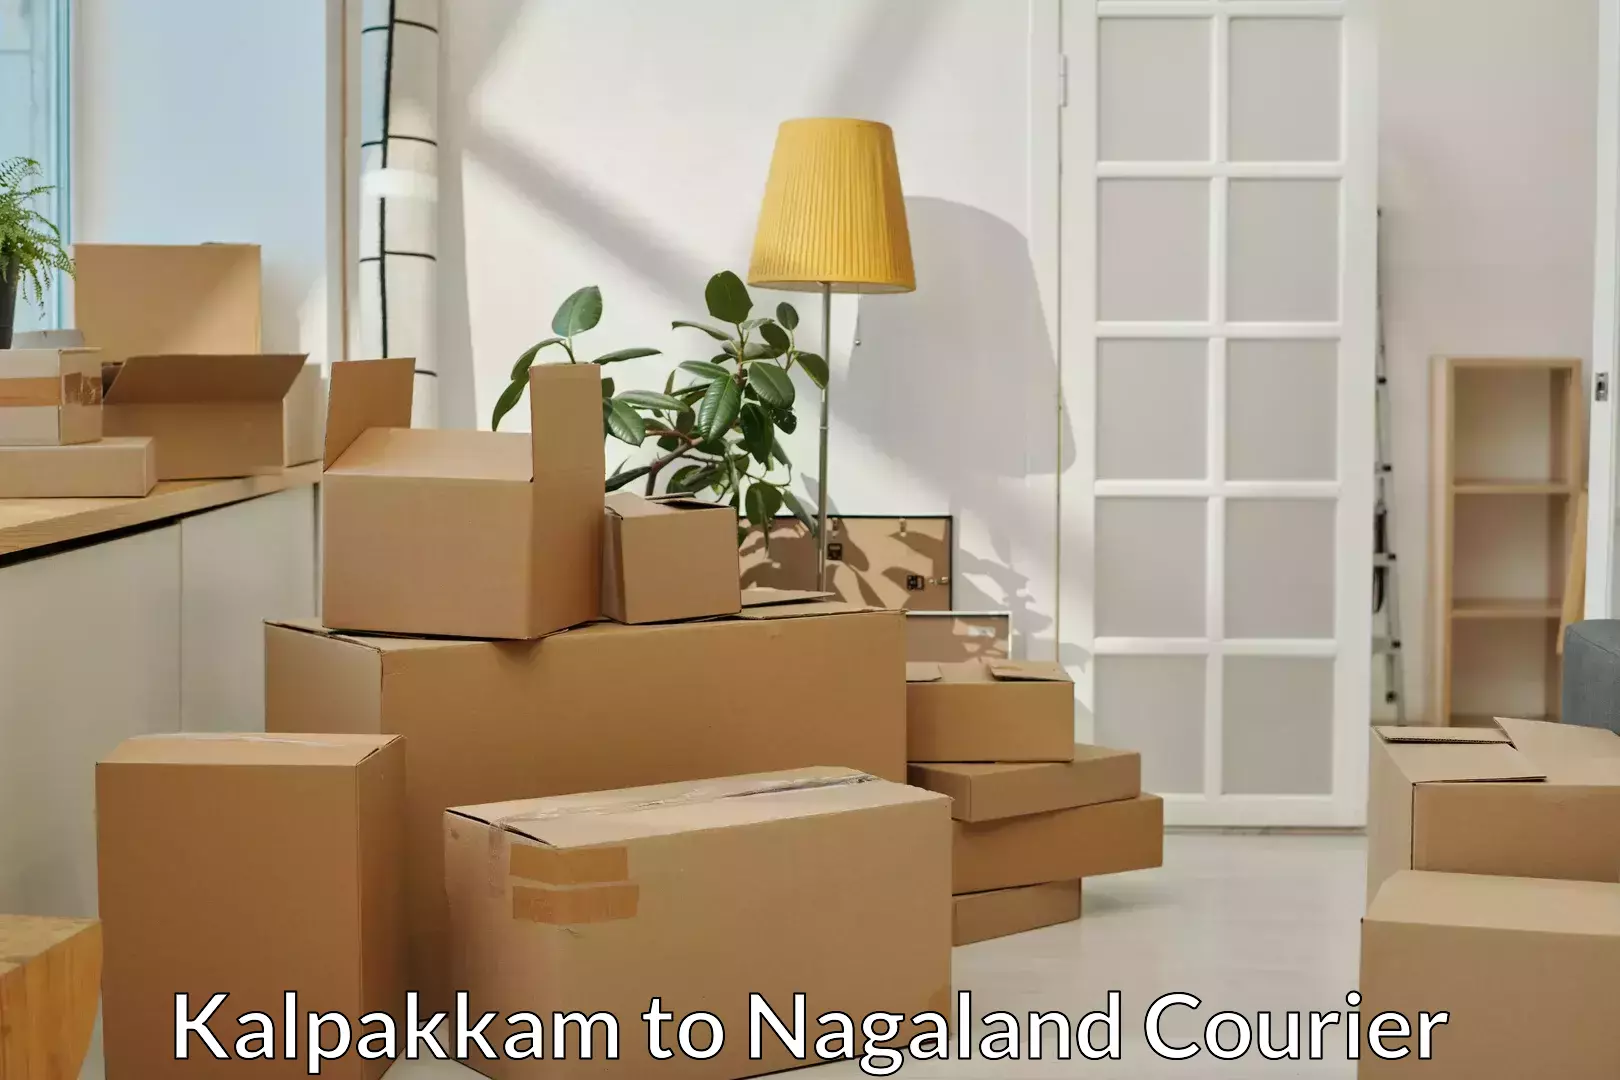 Moving and packing experts Kalpakkam to Chumukedima